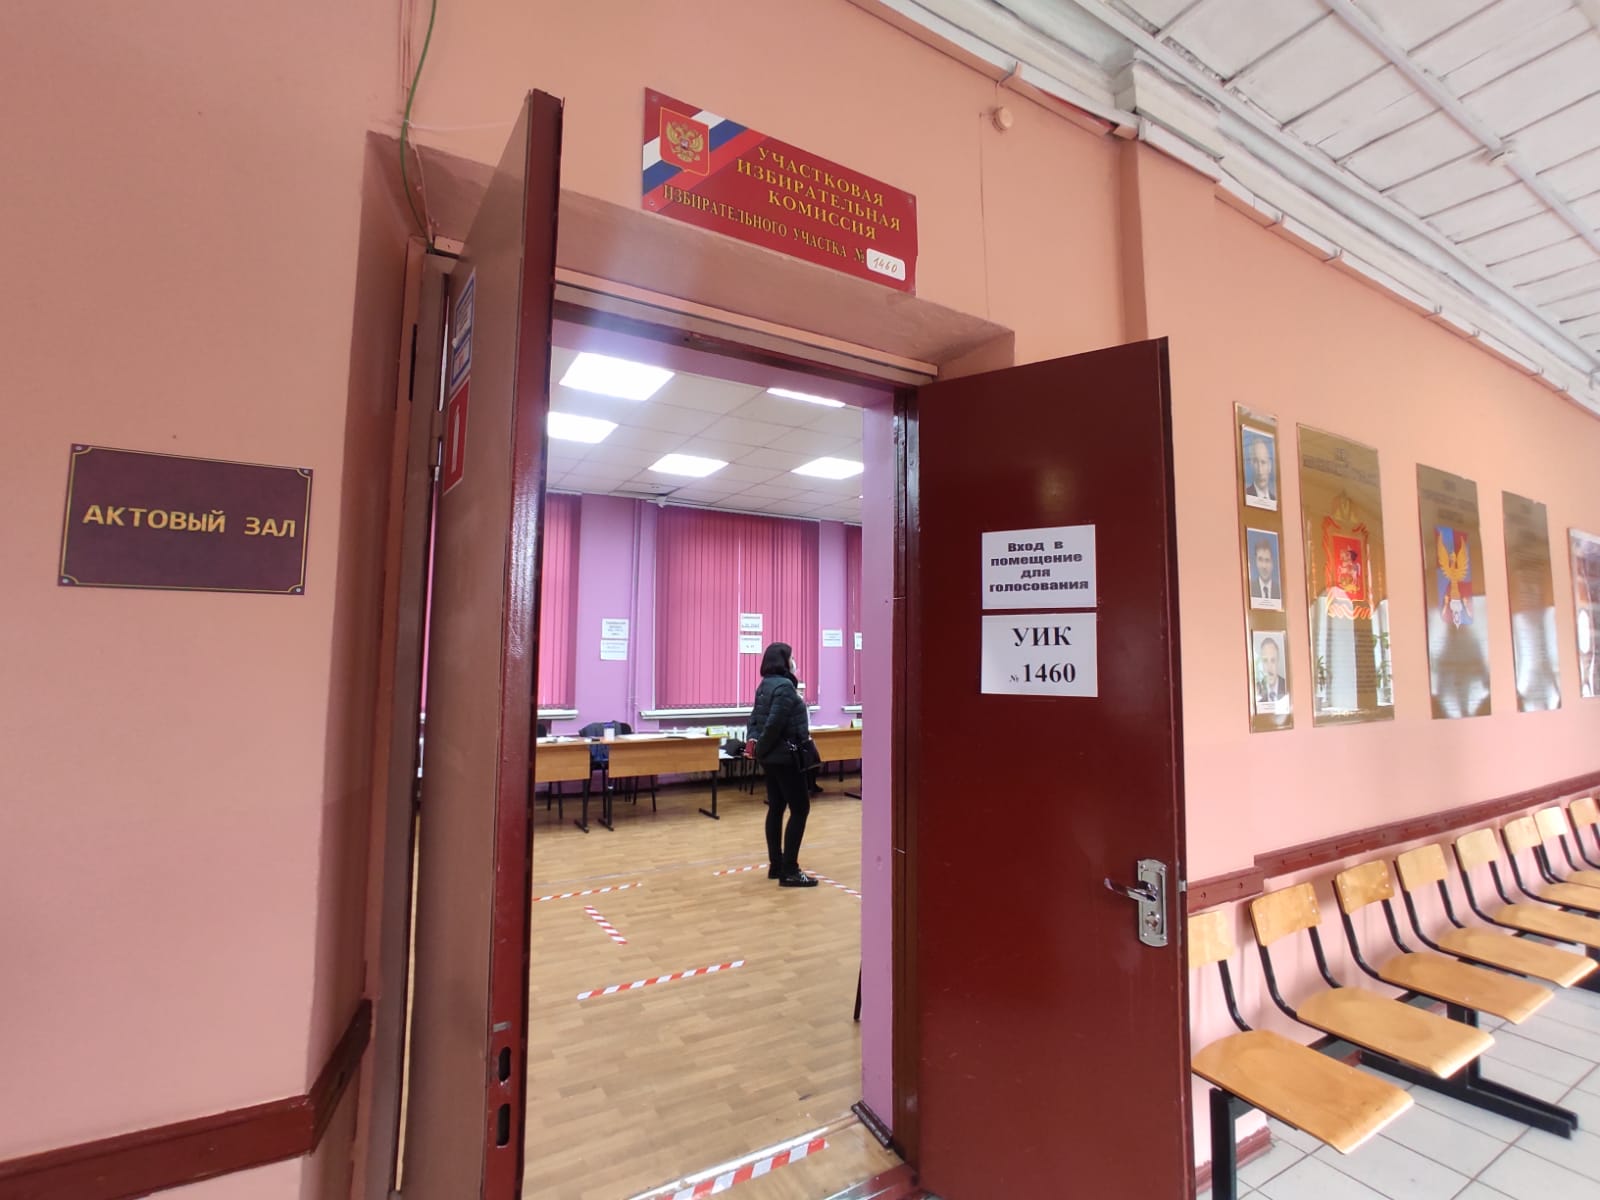 Во сколько открывается избирательный участок в москве. Избирательный участок Москва. Открытие избирательных участков. Избирательный участок в триумфе Люберцы фото.